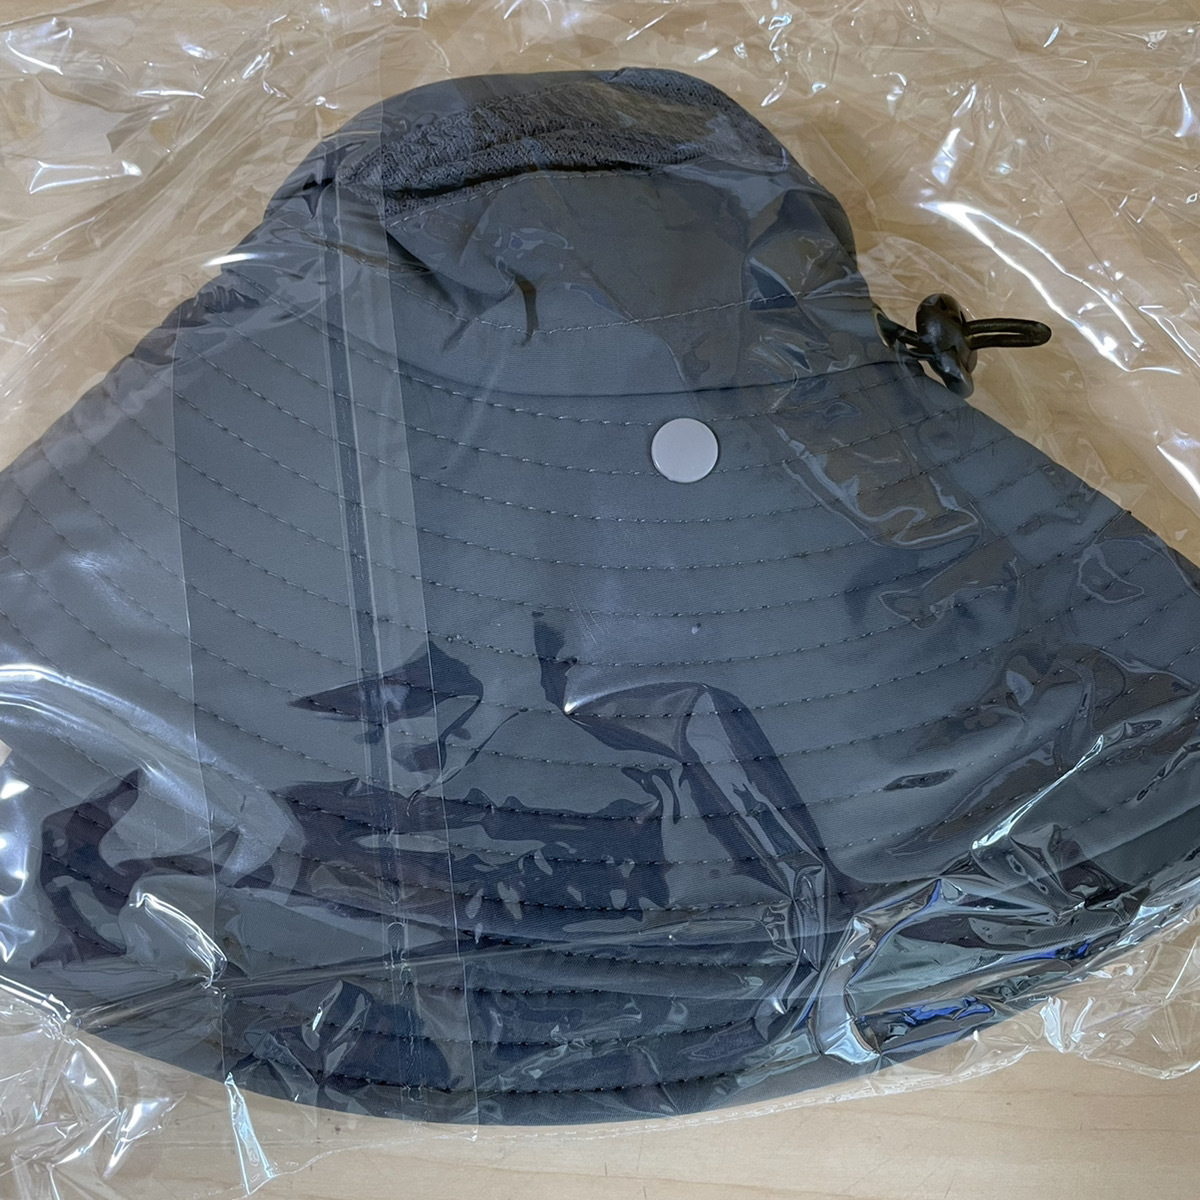 サファリハット グレー 帽子 UVカット 紫外線対策 アウトドア 撥水 通気性